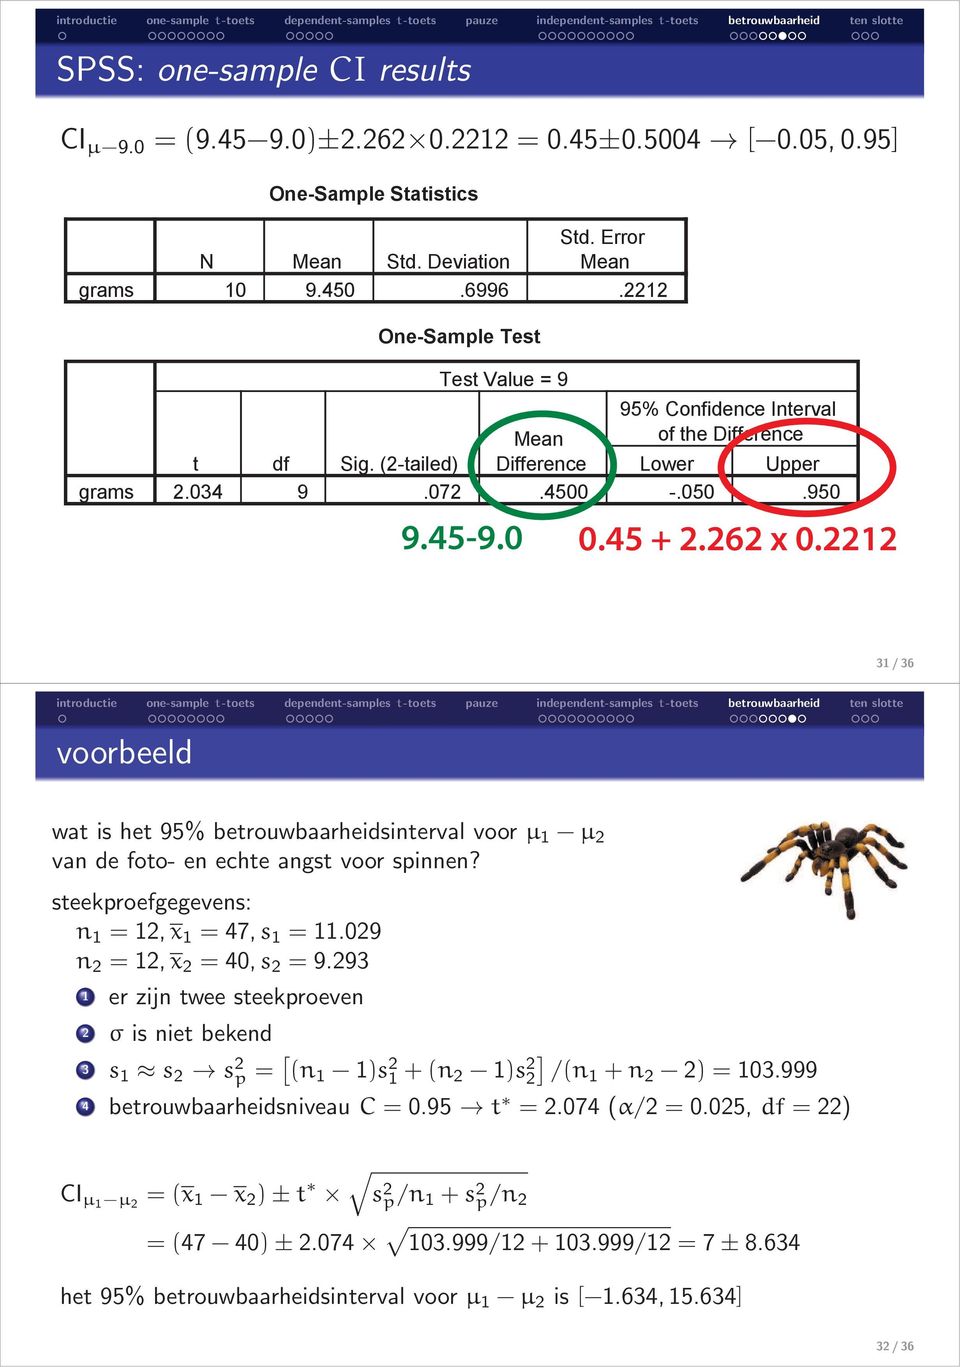 2212 31/36 voorbeeld wat is het 95% betrouwbaarheidsinterval voor µ 1 µ 2 van de foto- en echte angst voor spinnen? steekproefgegevens: n 1 = 12,x 1 = 47,s 1 = 11.029 n 2 = 12,x 2 = 40,s 2 = 9.